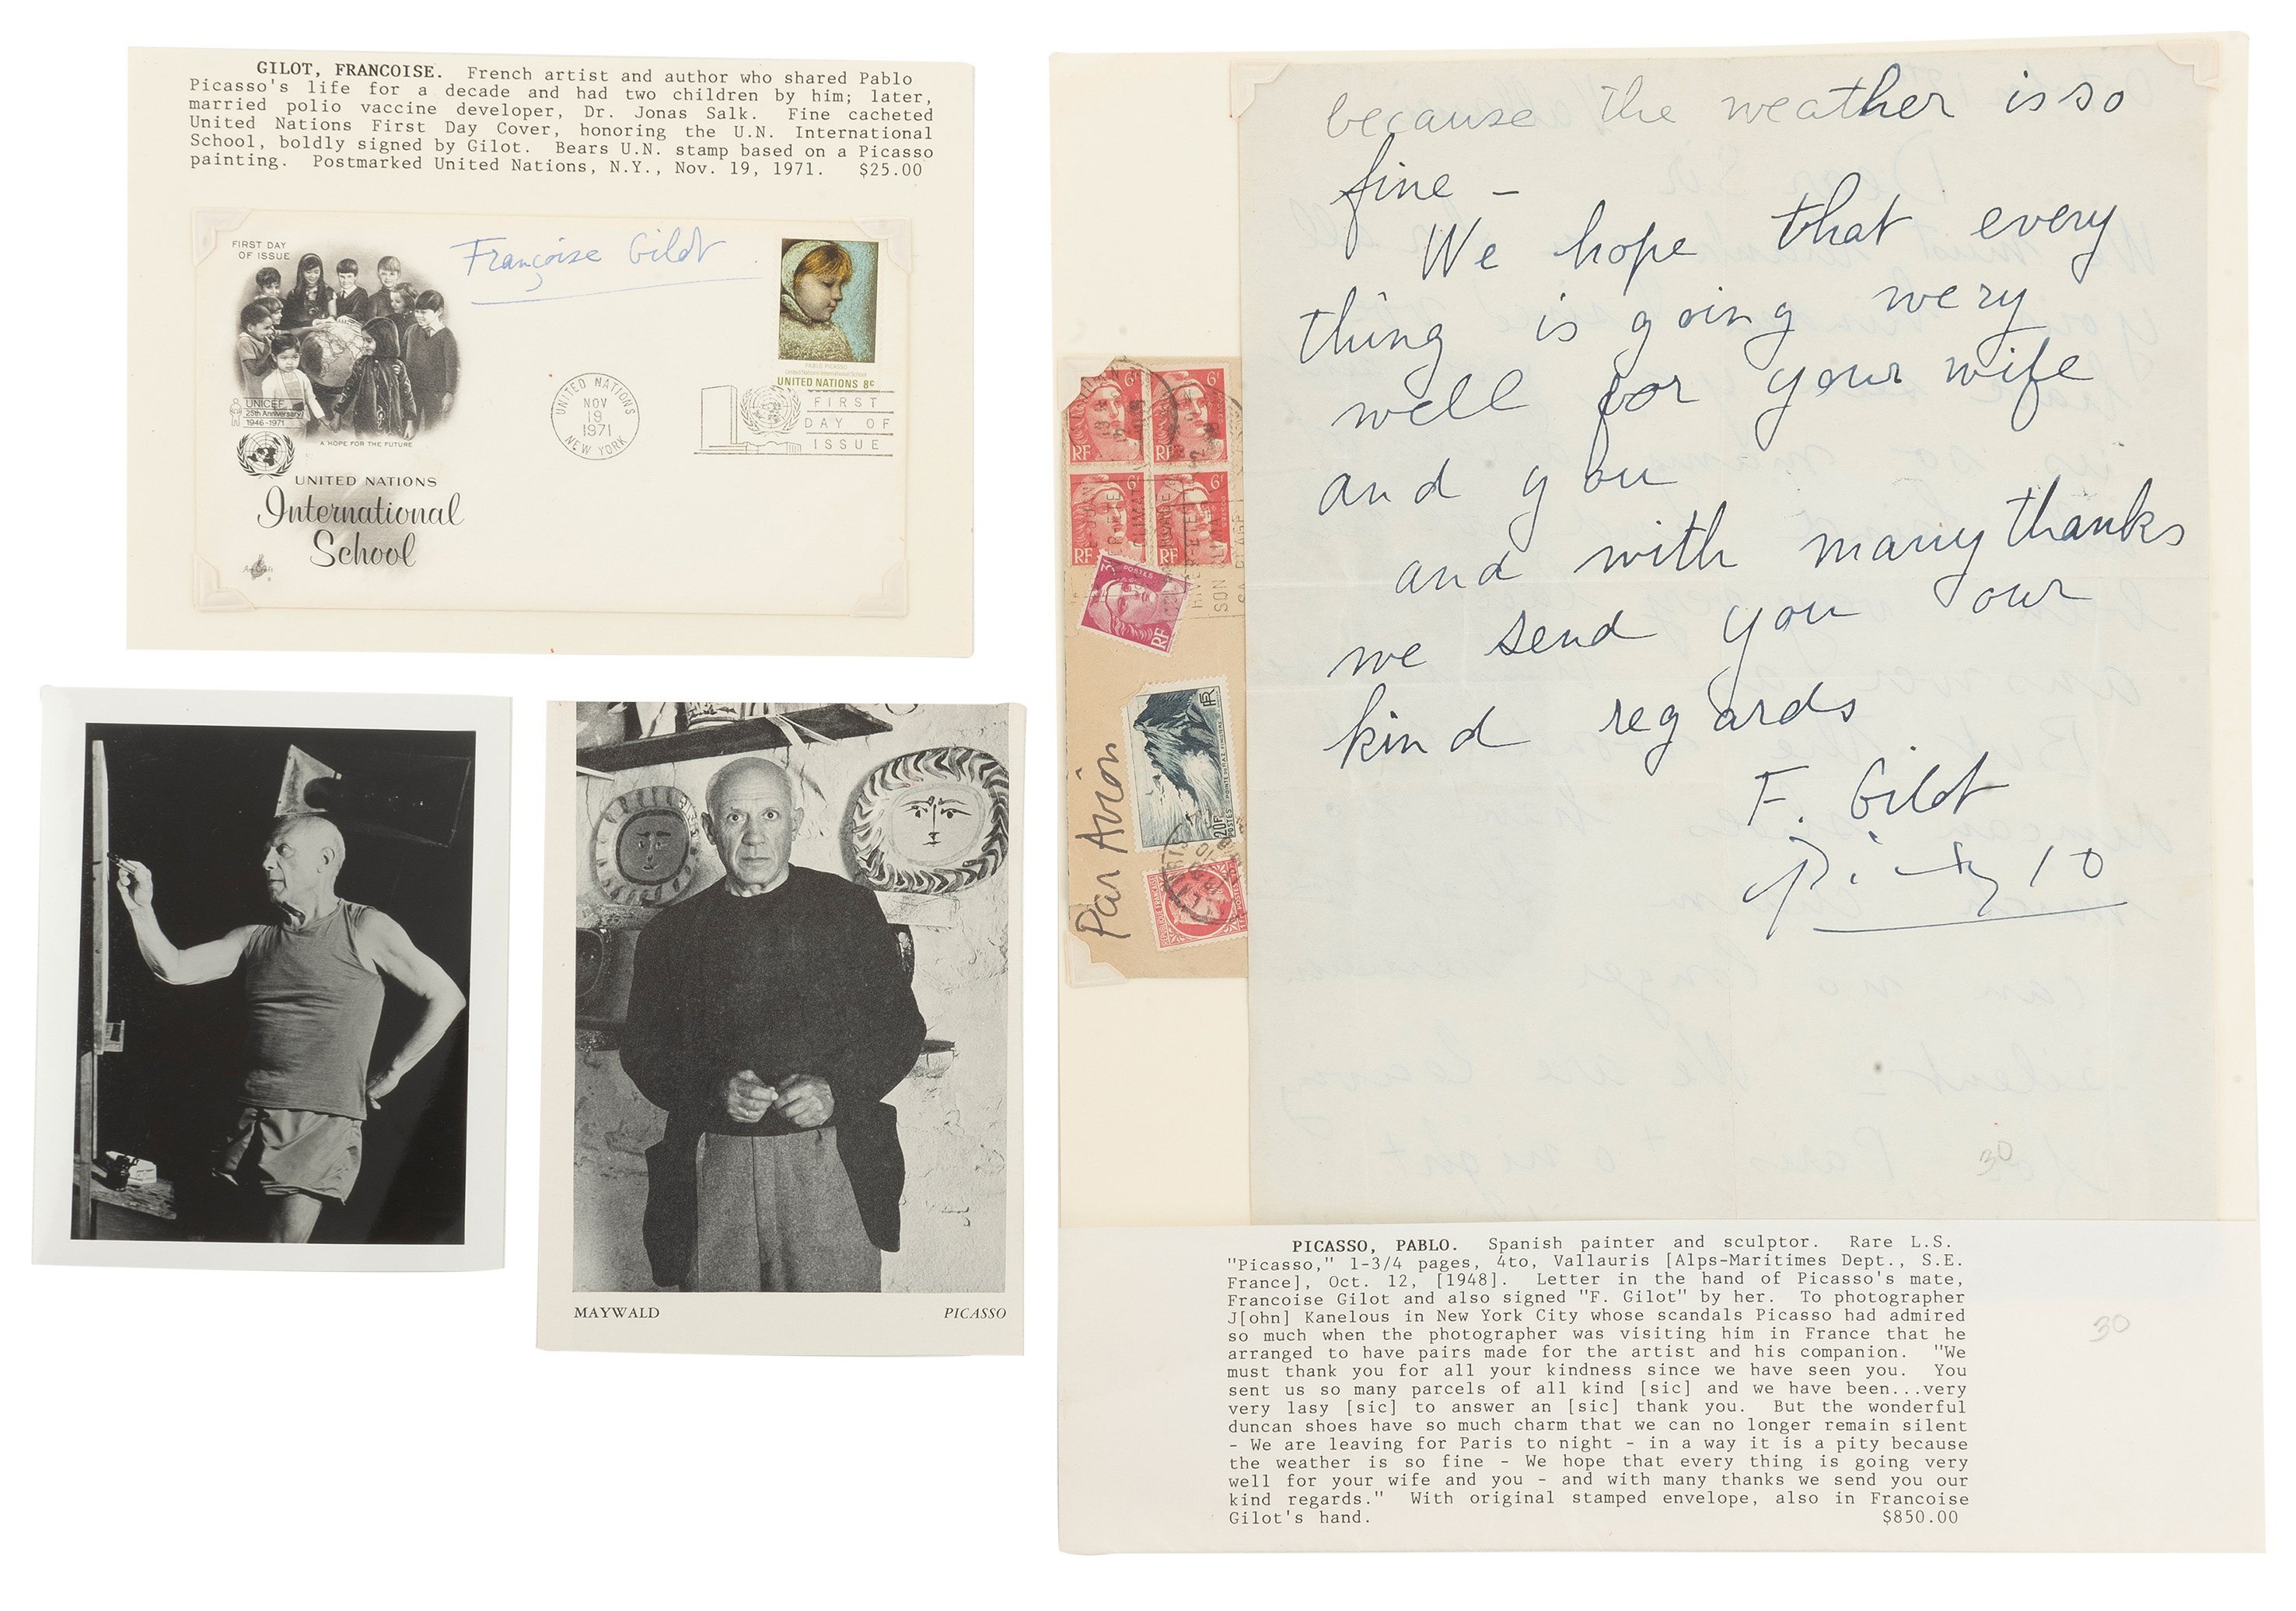  Una carta firmada por Picasso y Francoise Gilot sale a subasta en México